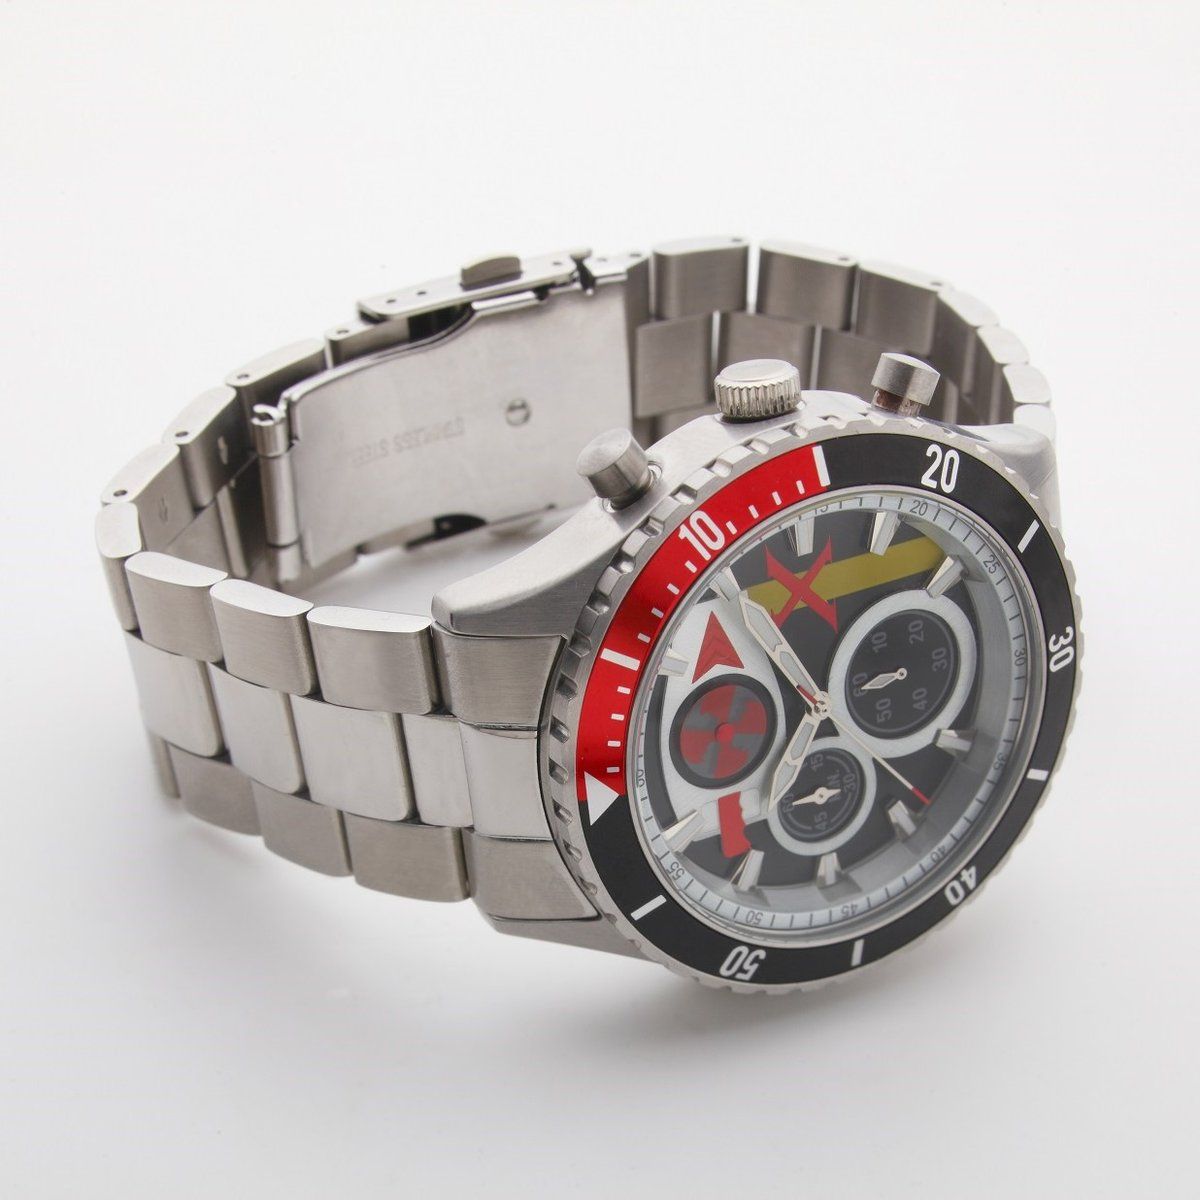 新品日本製 仮面ライダー クロノグラフ 腕時計 ウォッチ 1号・X・ストロンガー X3wfs-m96015614324